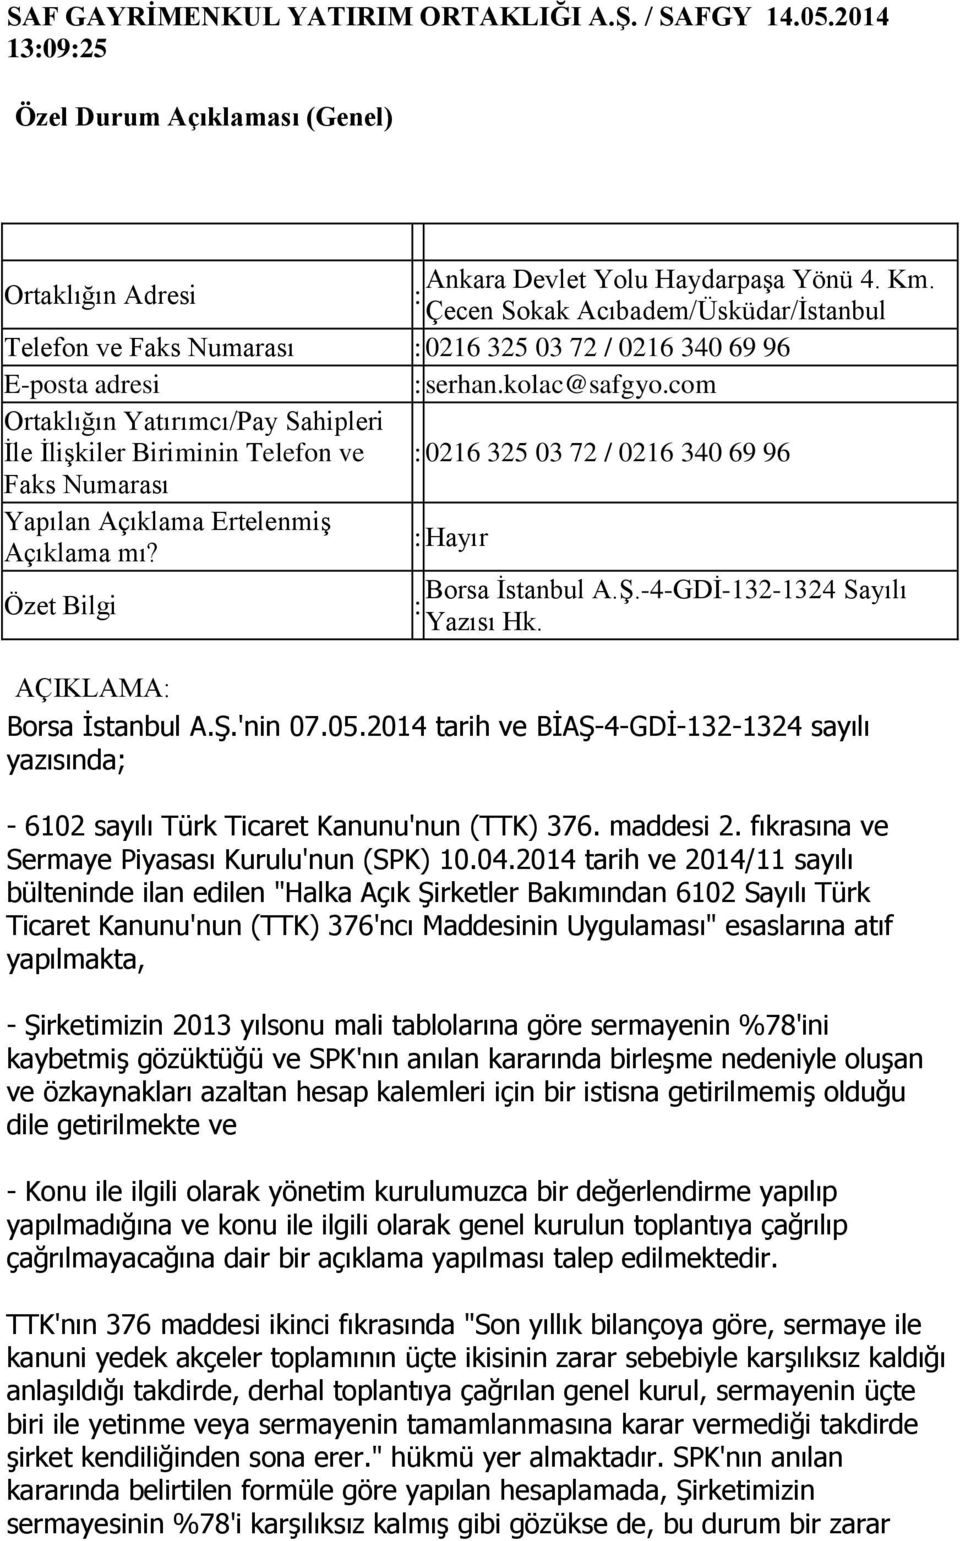 -4-GDİ-132-1324 Sayılı Yazısı Hk. AÇIKLAMA Borsa Ġstanbul A.ġ.'nin 07.05.2014 tarih ve BĠAġ-4-GDĠ-132-1324 sayılı yazısında; - 6102 sayılı Türk Ticaret Kanunu'nun (TTK) 376. maddesi 2.